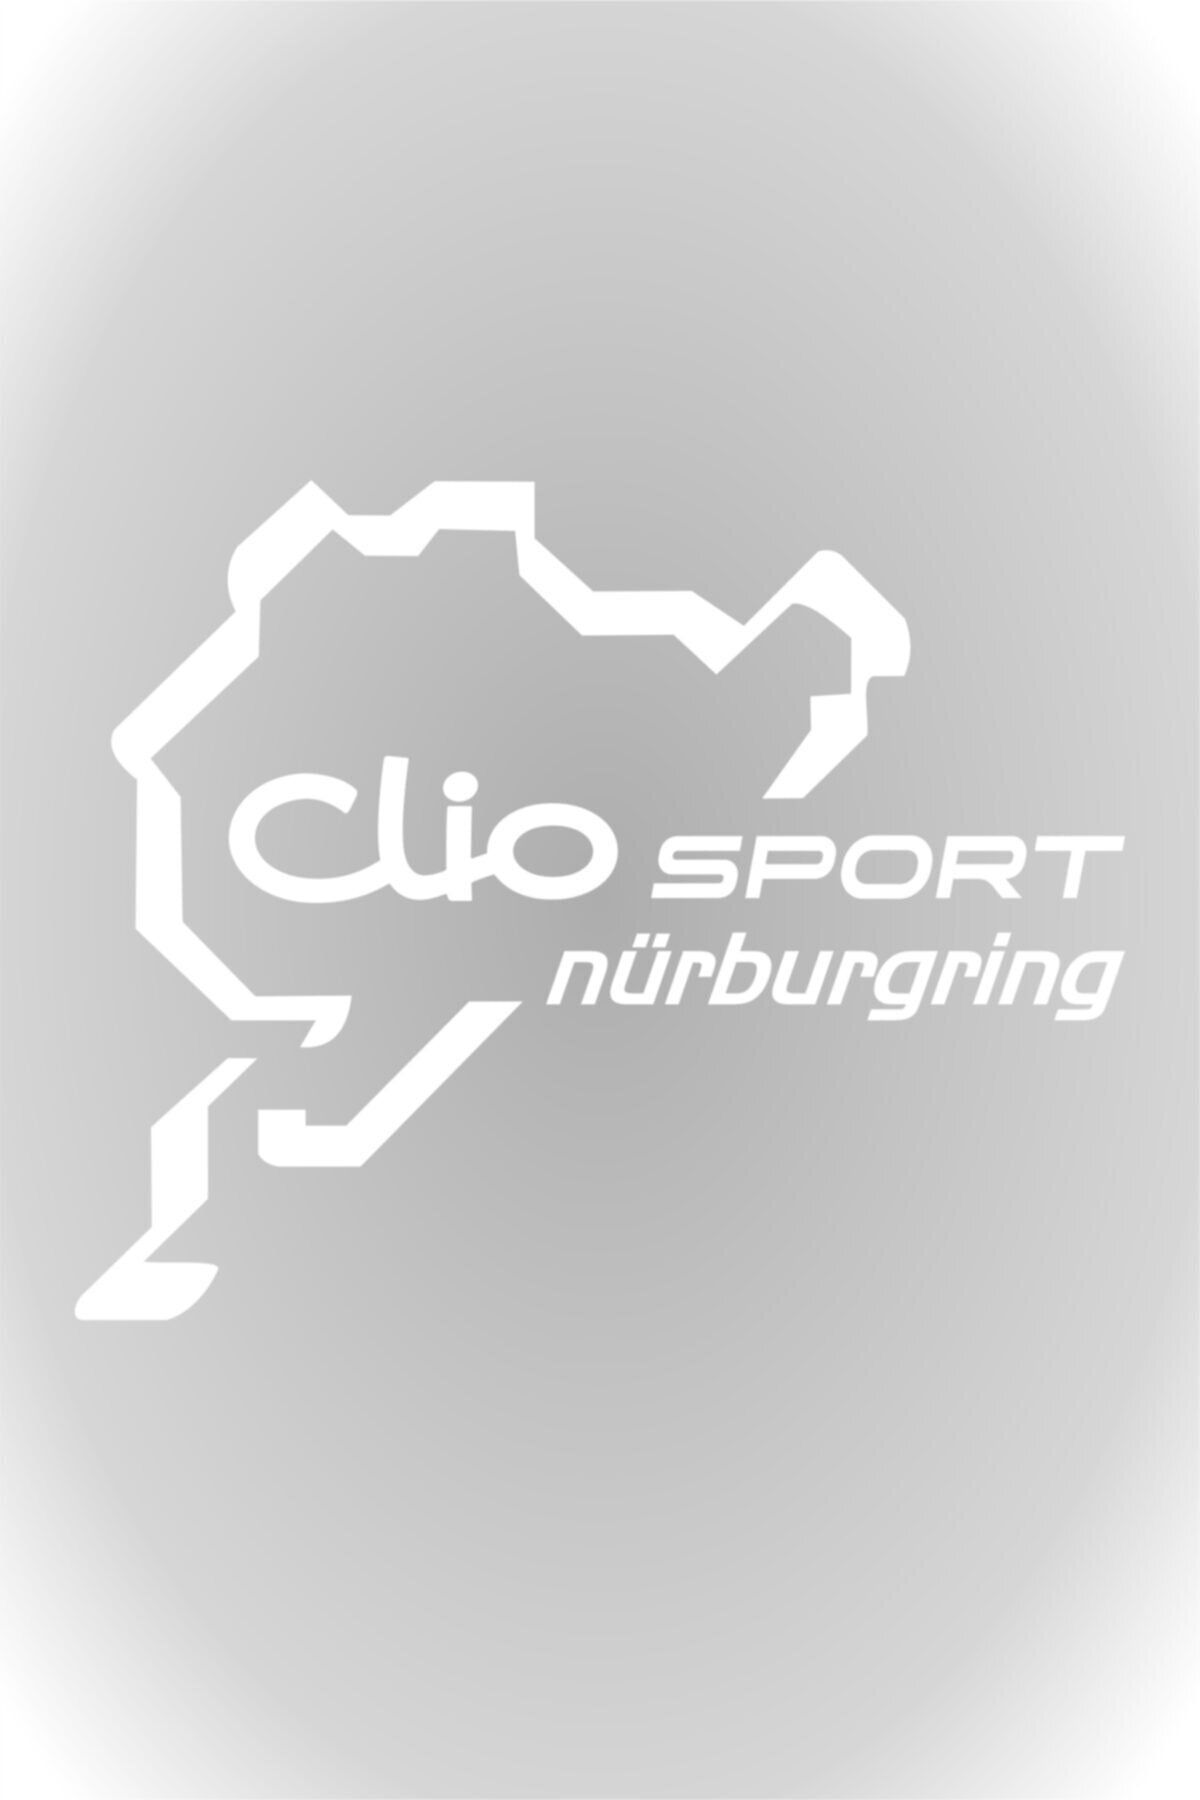 HMNL Clio Sport Nürburgring Oto Sticker Araba Sticker Beyaz 20 X 16 Cm